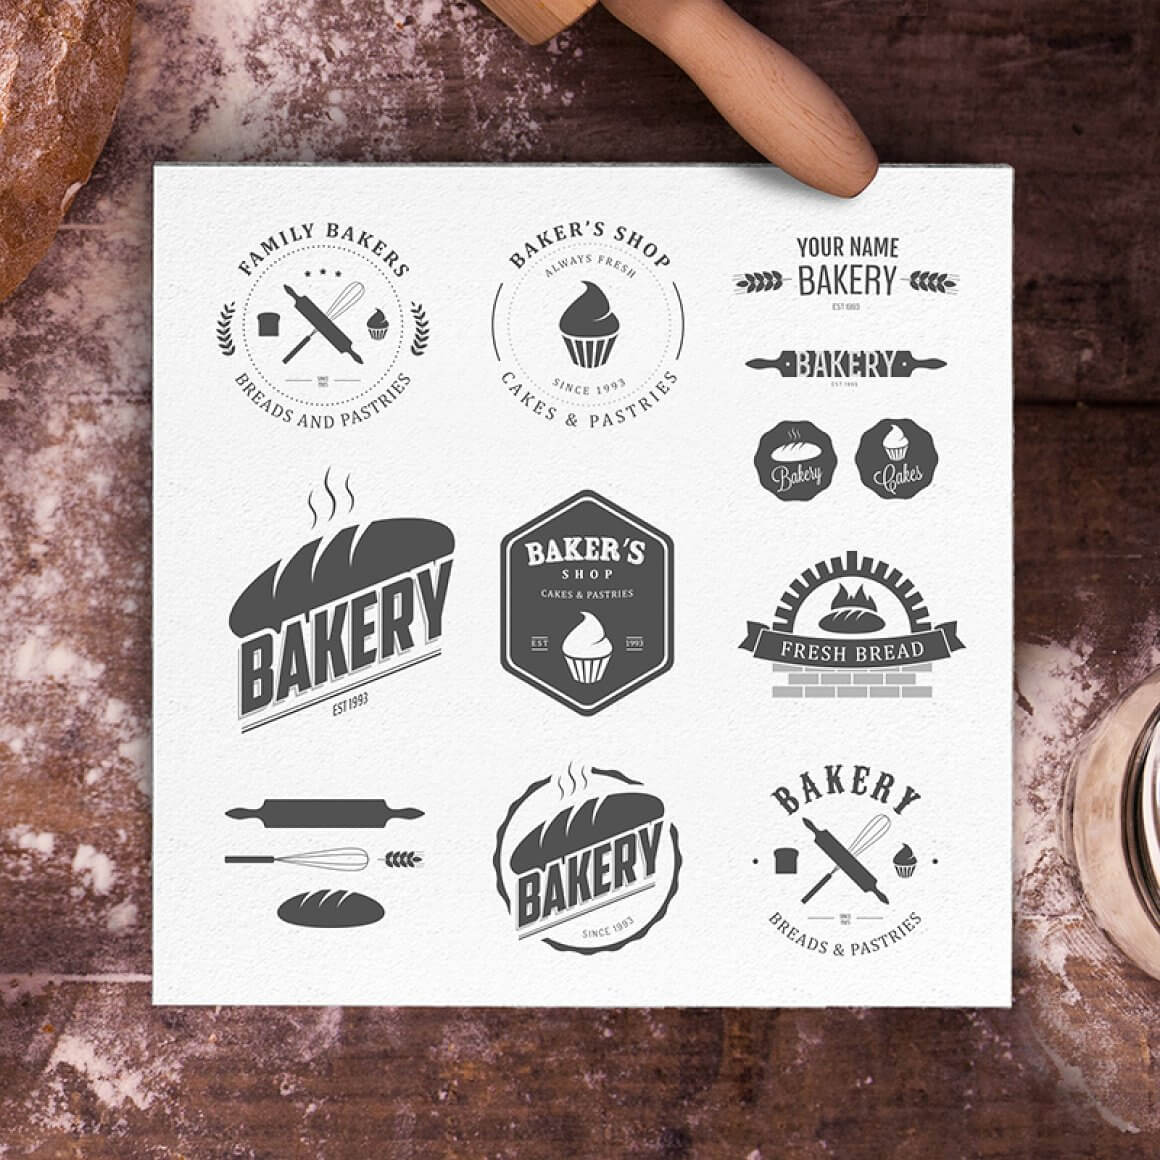 Logos of company name "Bakery".